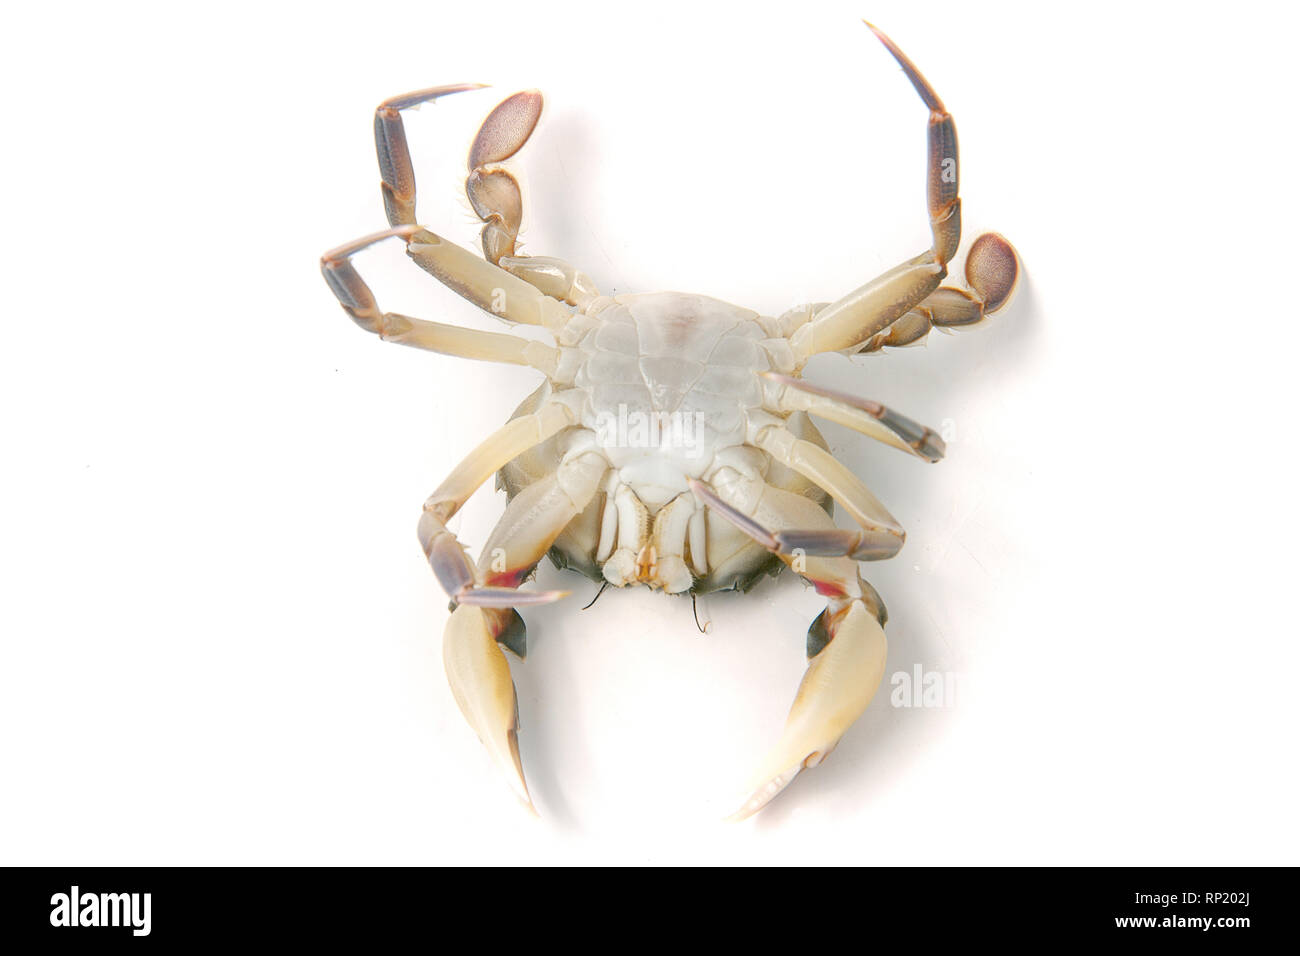 Live Krabbe auf dem Rücken liegend isoliert auf einem weißen Hintergrund. Stockfoto